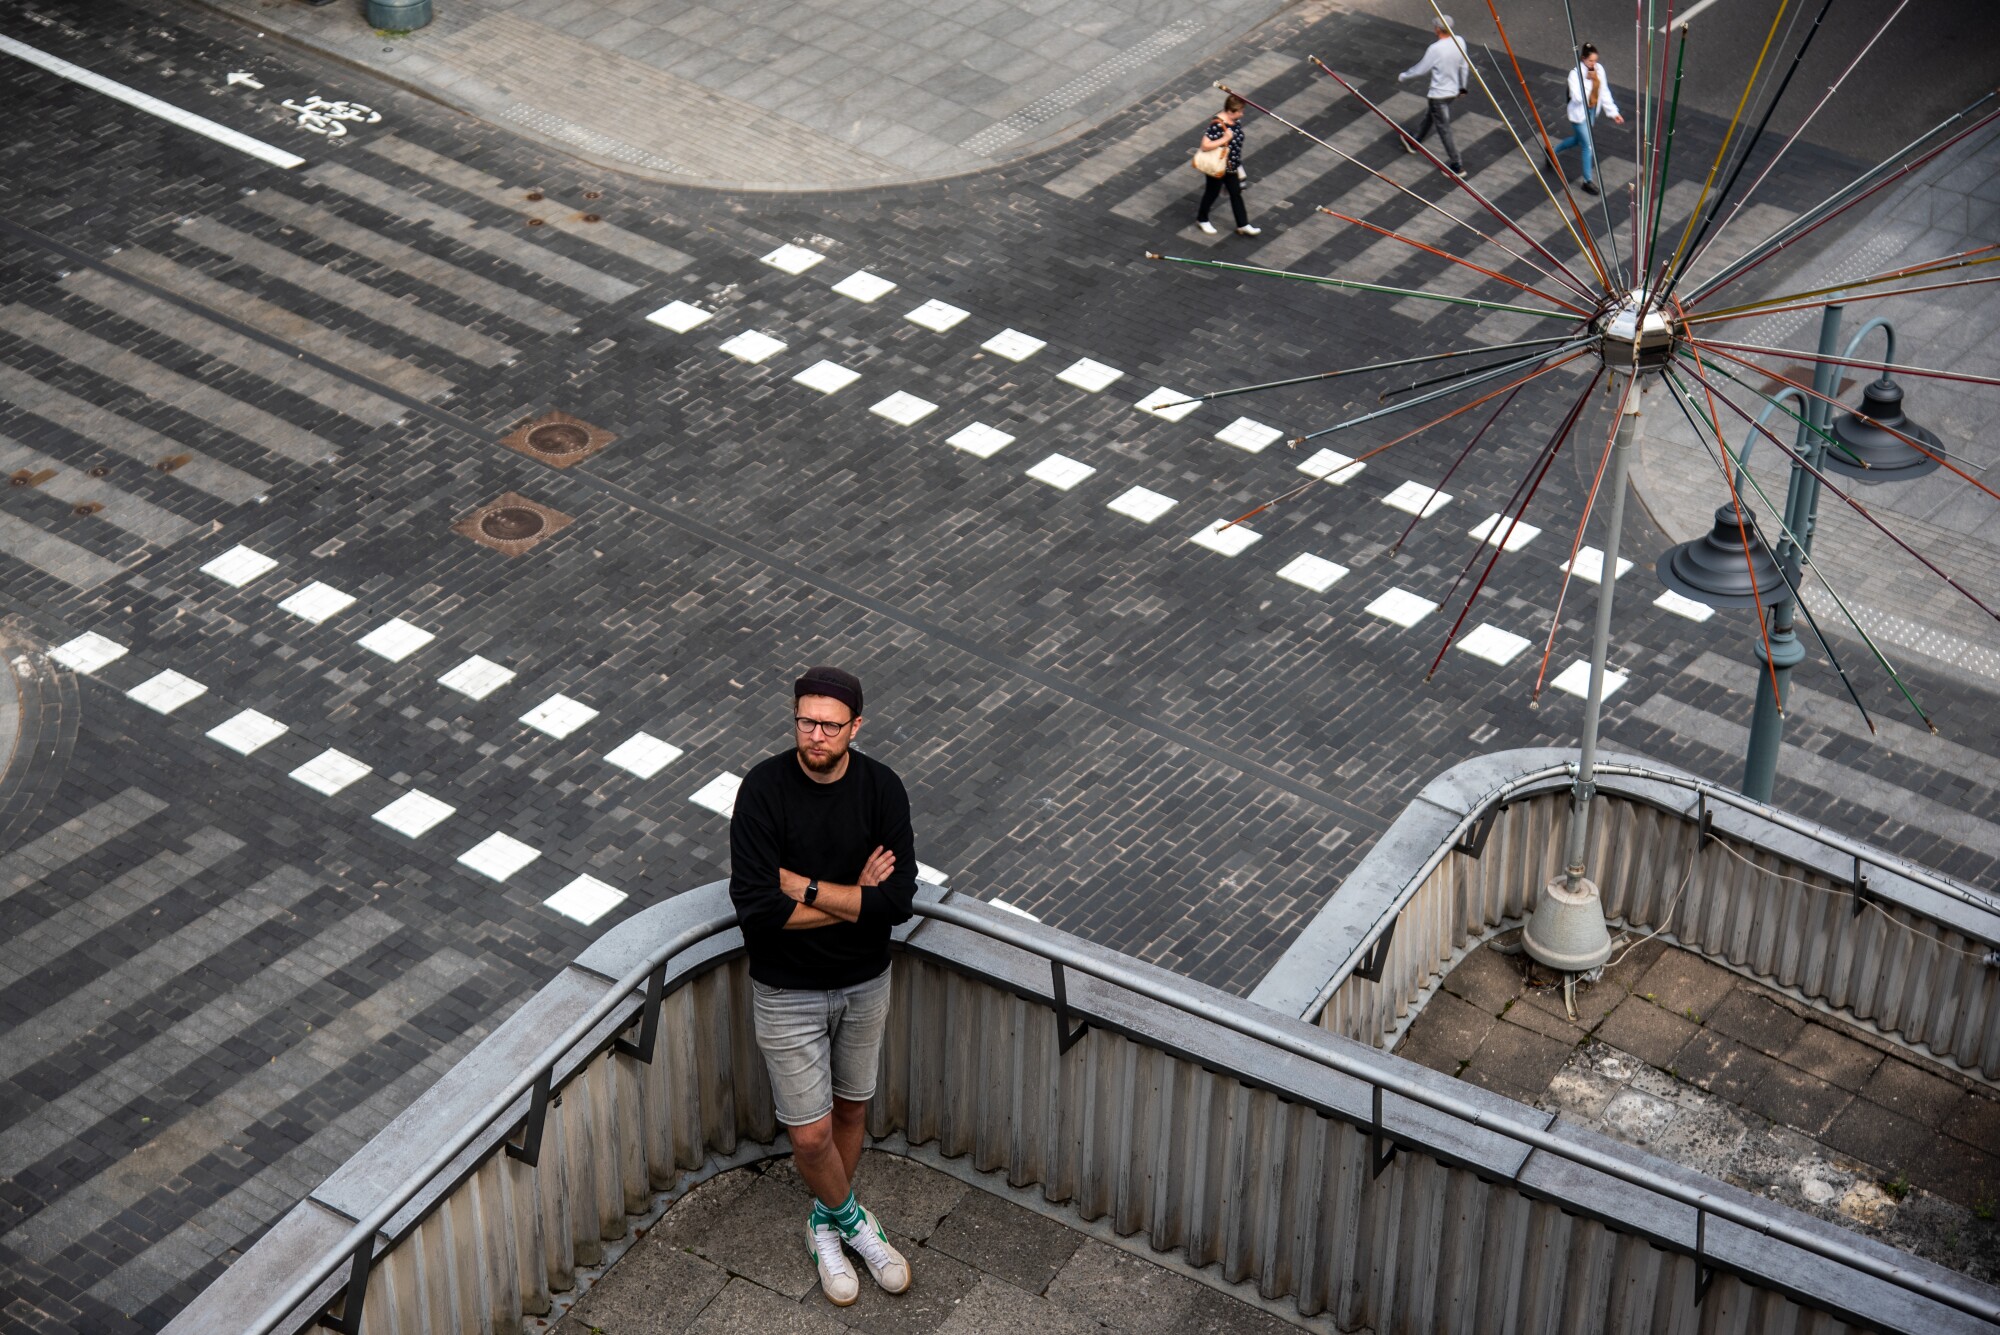 Jonas Spokas standing on a rooftop, as seen above a street 